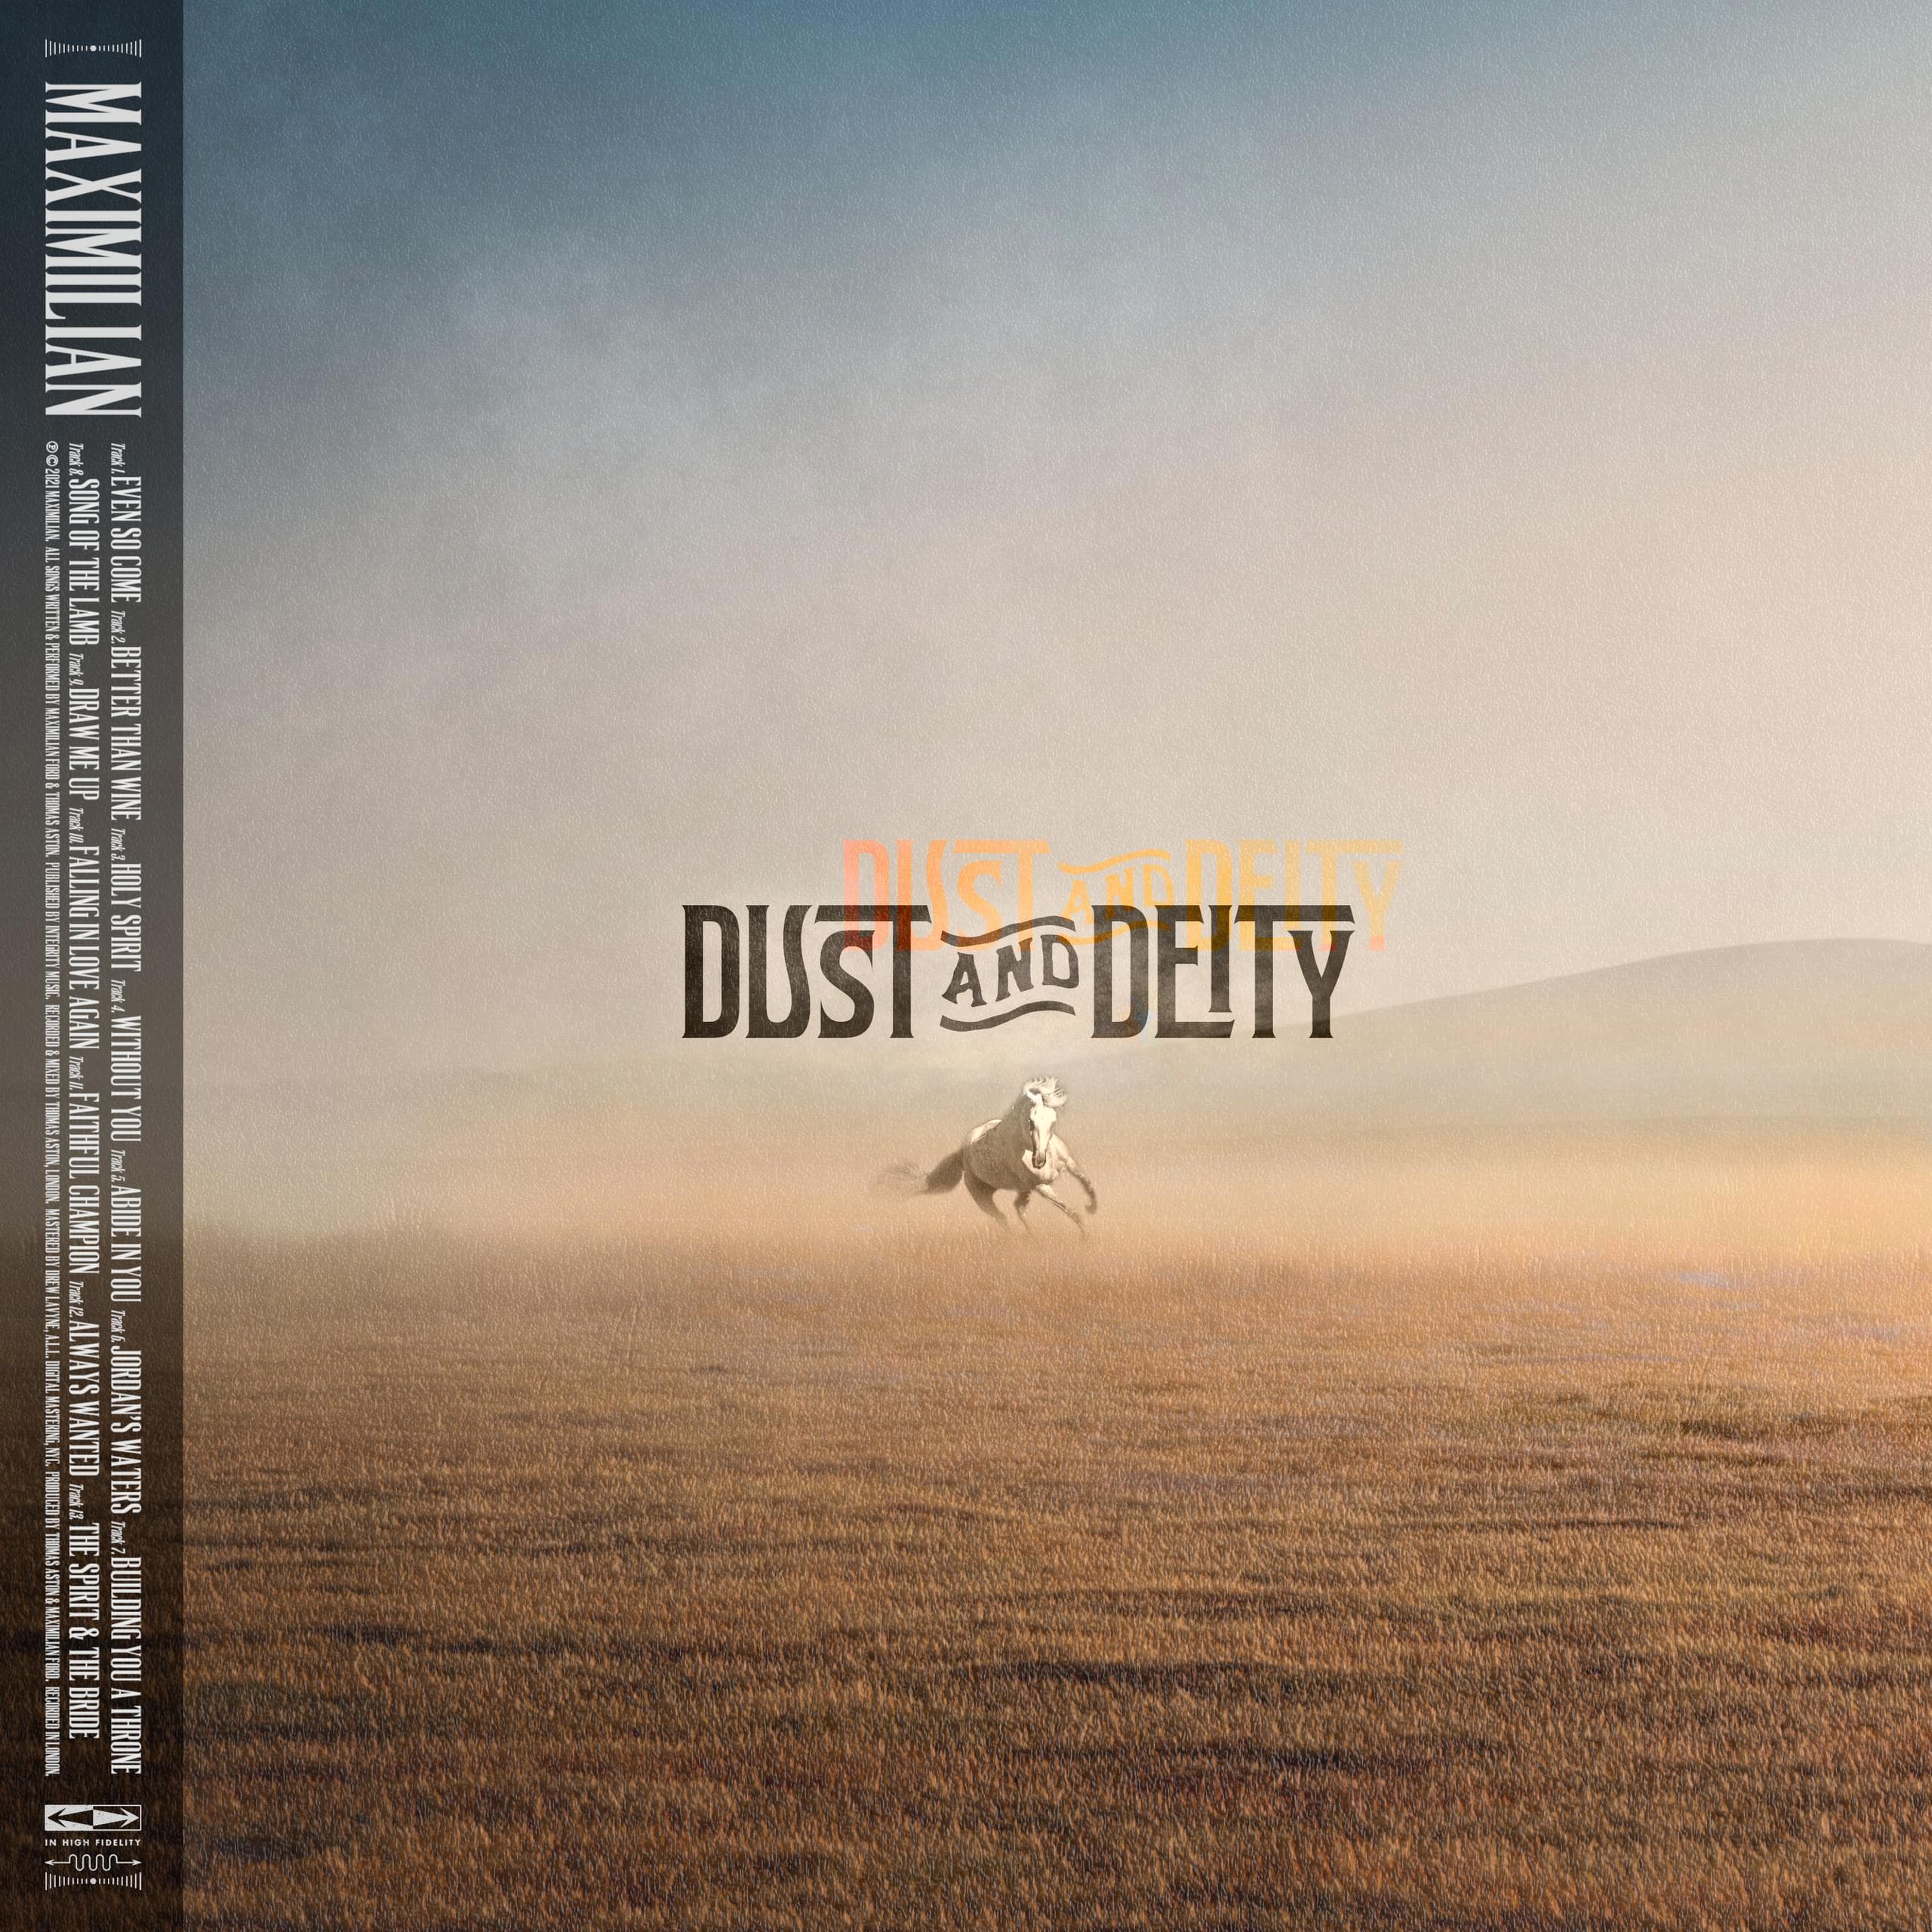 Dust and Deity - Maximillian